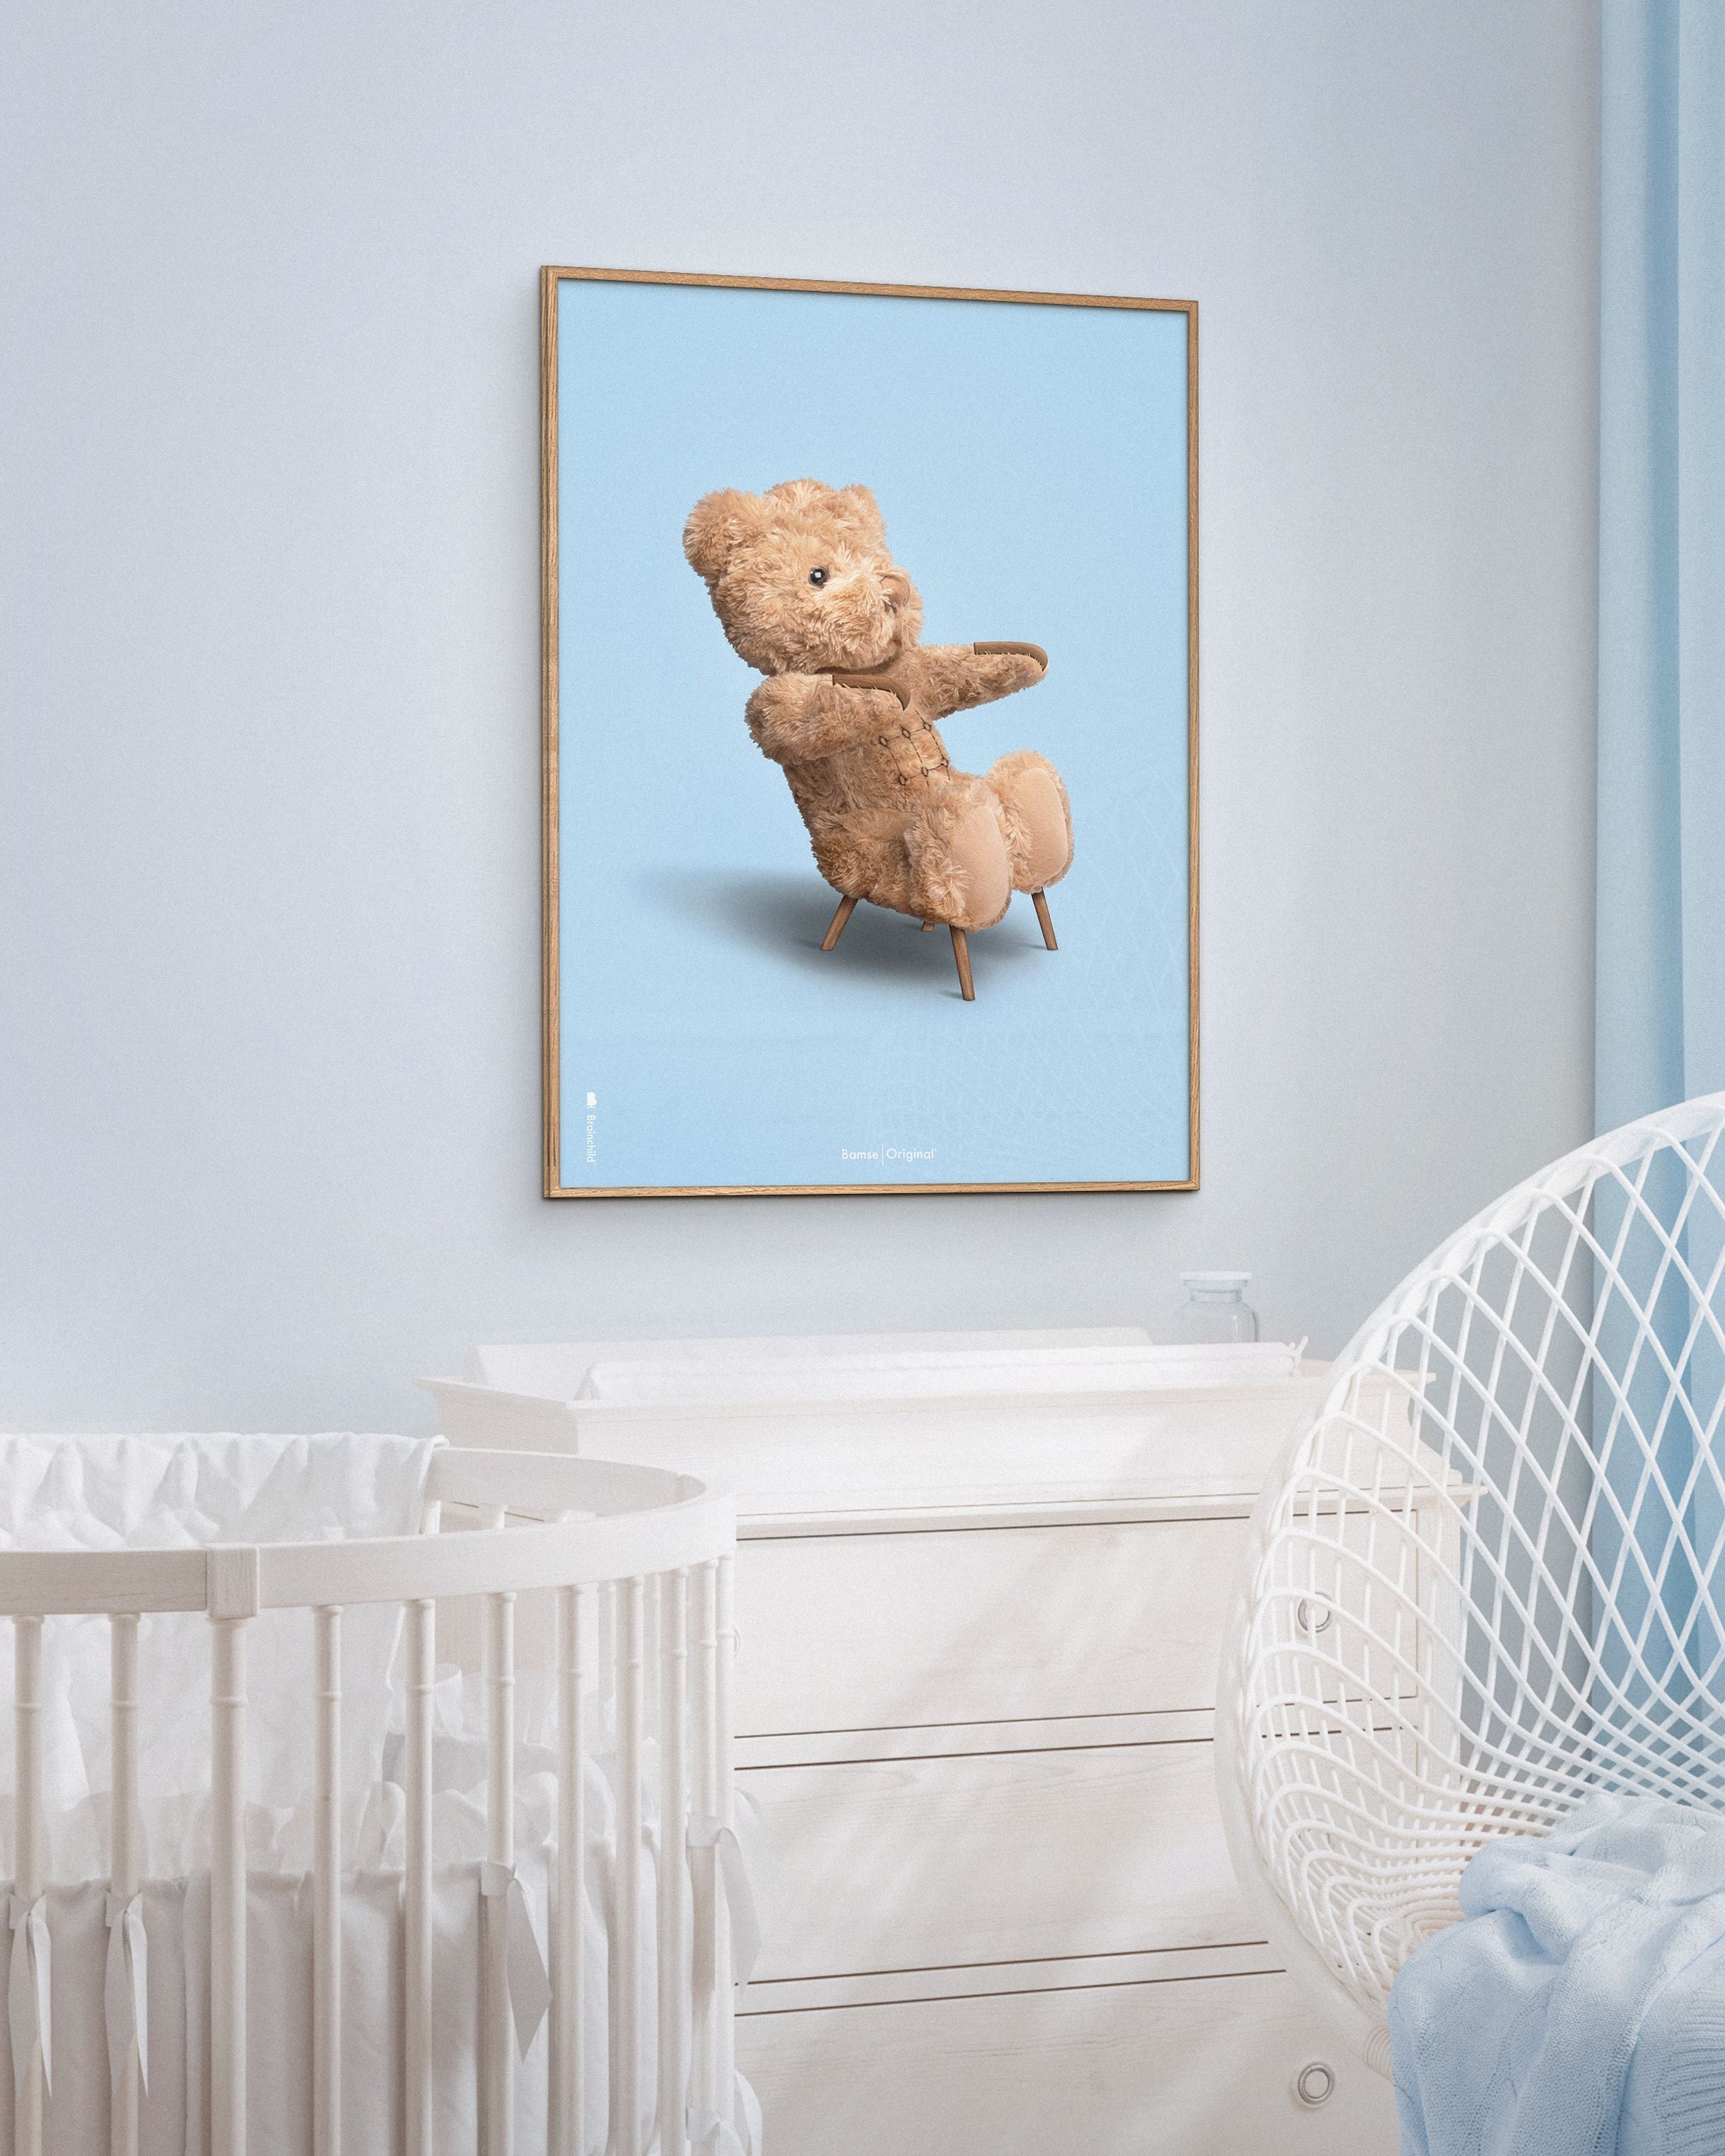 Marco de póster clásico de BrainChild Teddy Bear Hecho de rama de madera clara de 30x40 cm, fondo azul claro